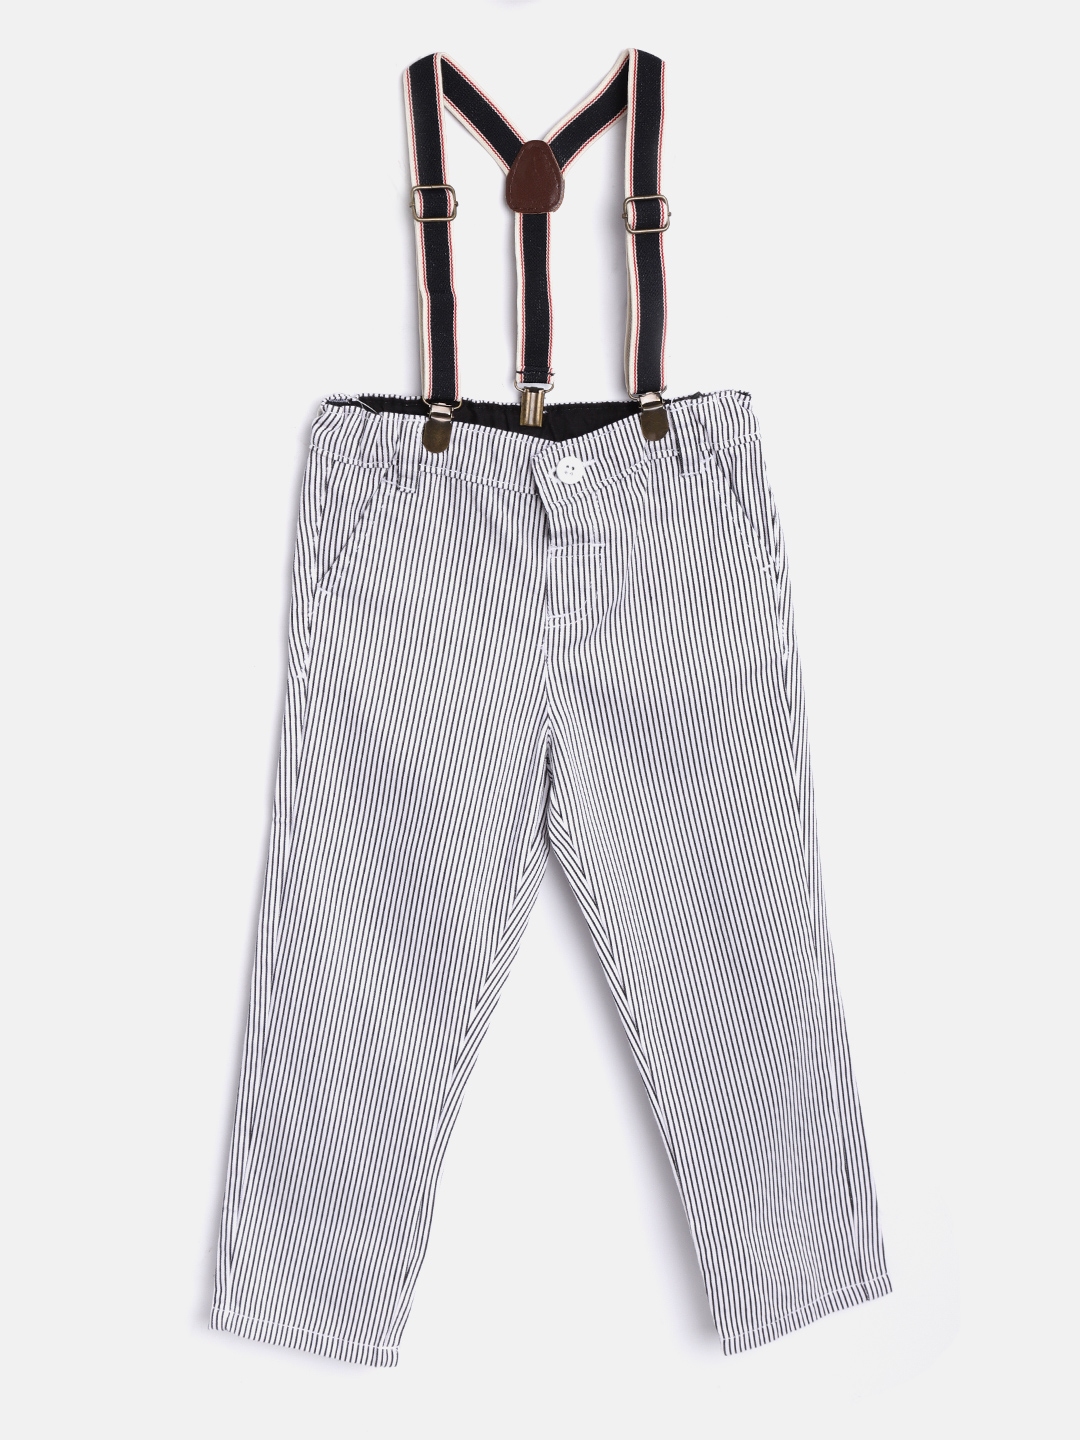 Lycra Cotton Pant  Trousers Designer Boys Trouser Size 280